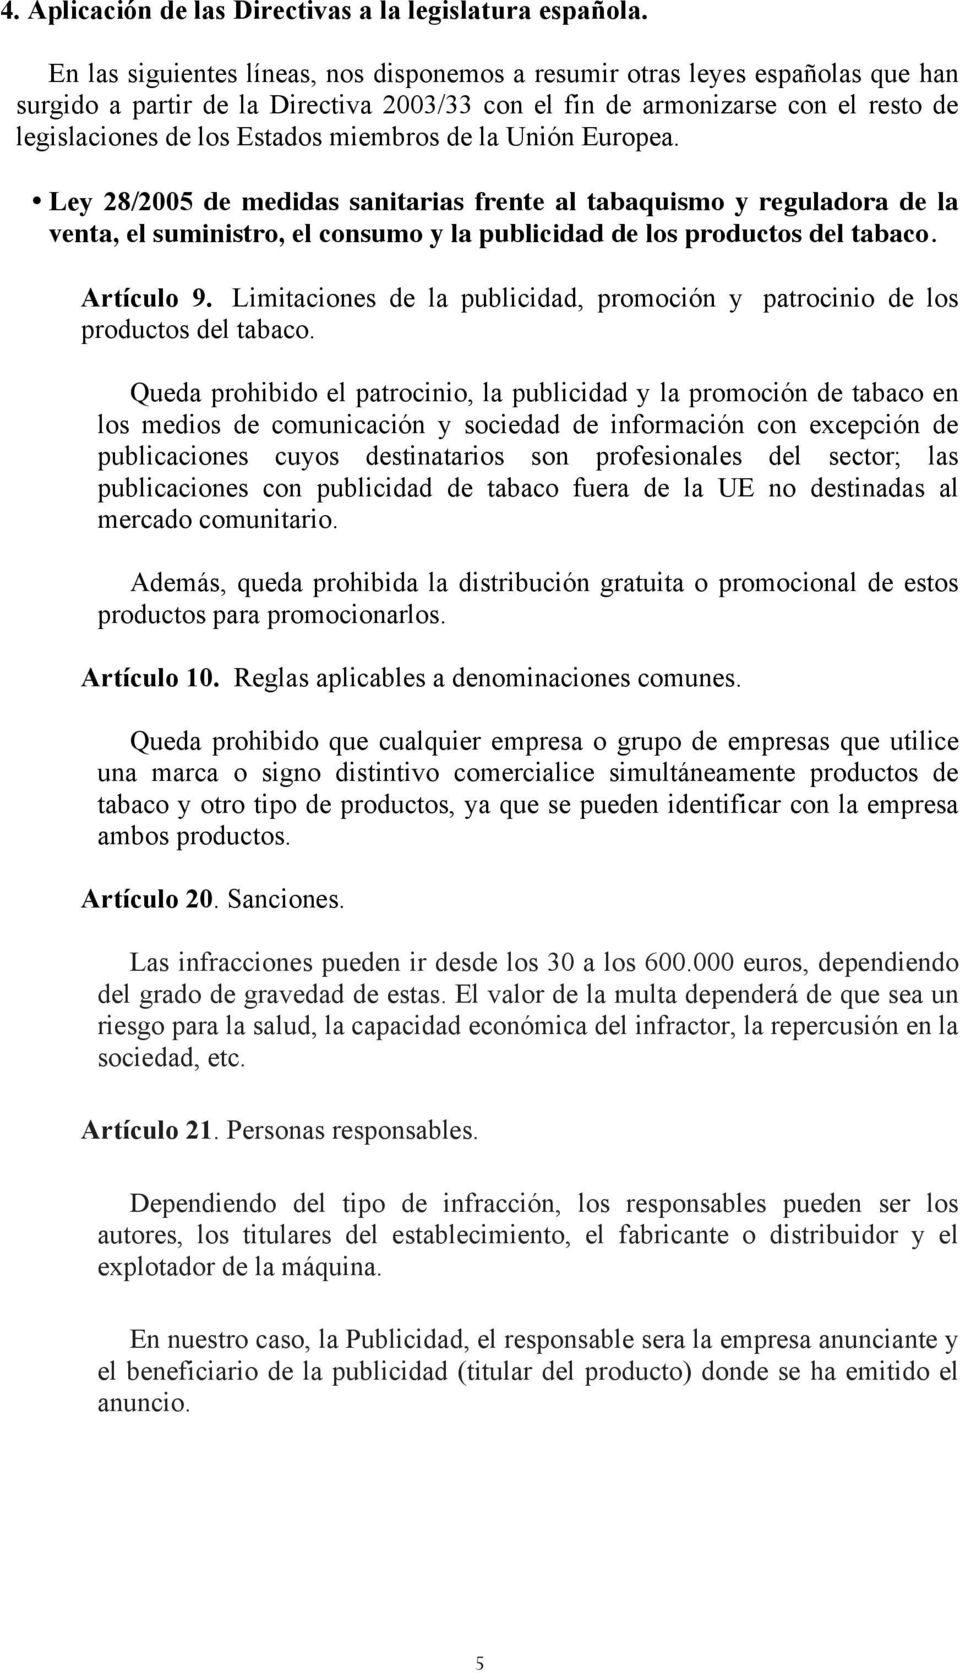 miembros de la Unión Europea. Ley 28/2005 de medidas sanitarias frente al tabaquismo y reguladora de la venta, el suministro, el consumo y la publicidad de los productos del tabaco. Artículo 9.